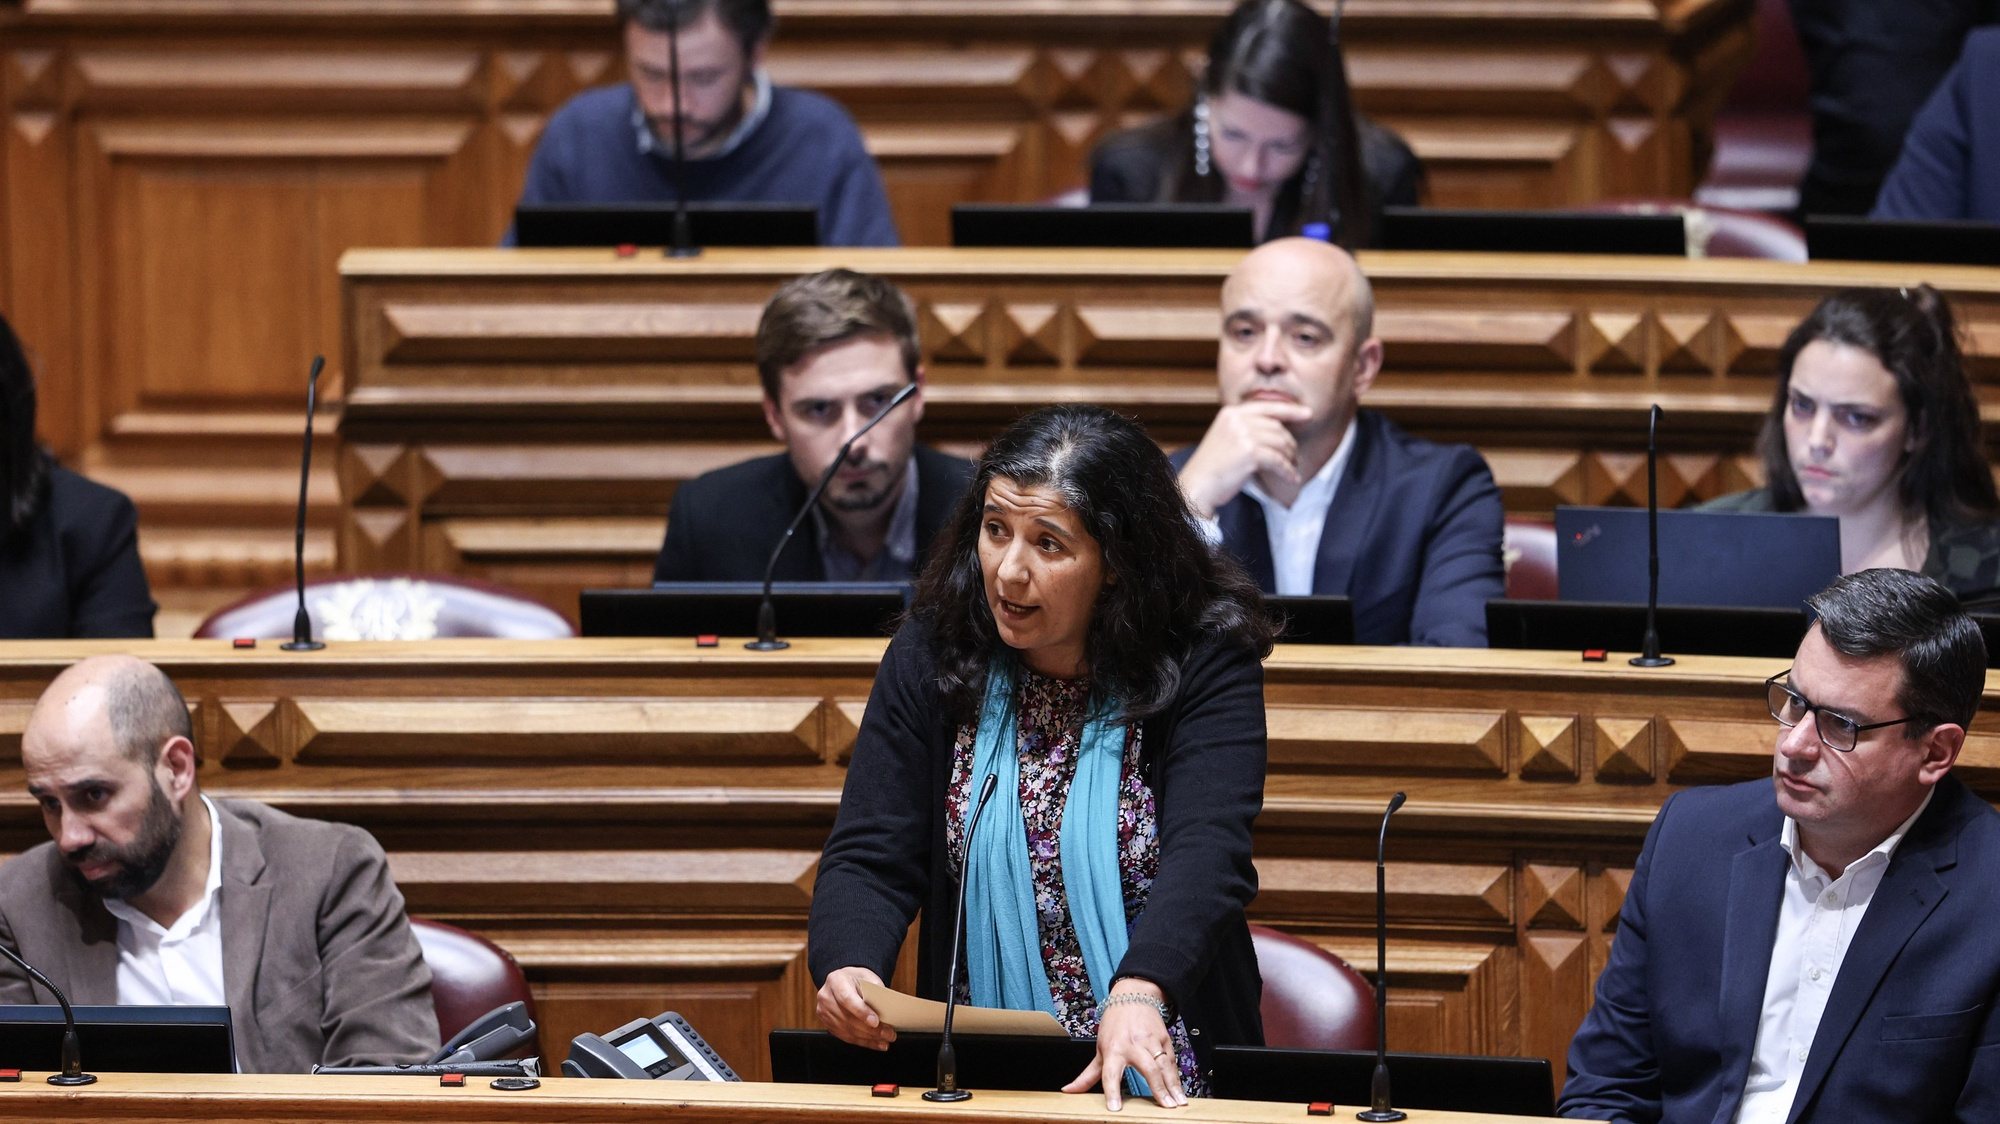 A deputada do PCP, Paula Santos, intervém no debate parlamentar sobre política geral, esta tarde na Assembleia da República, em Lisboa, 11 de janeiro de 2023. MIGUEL A. LOPES/LUSA